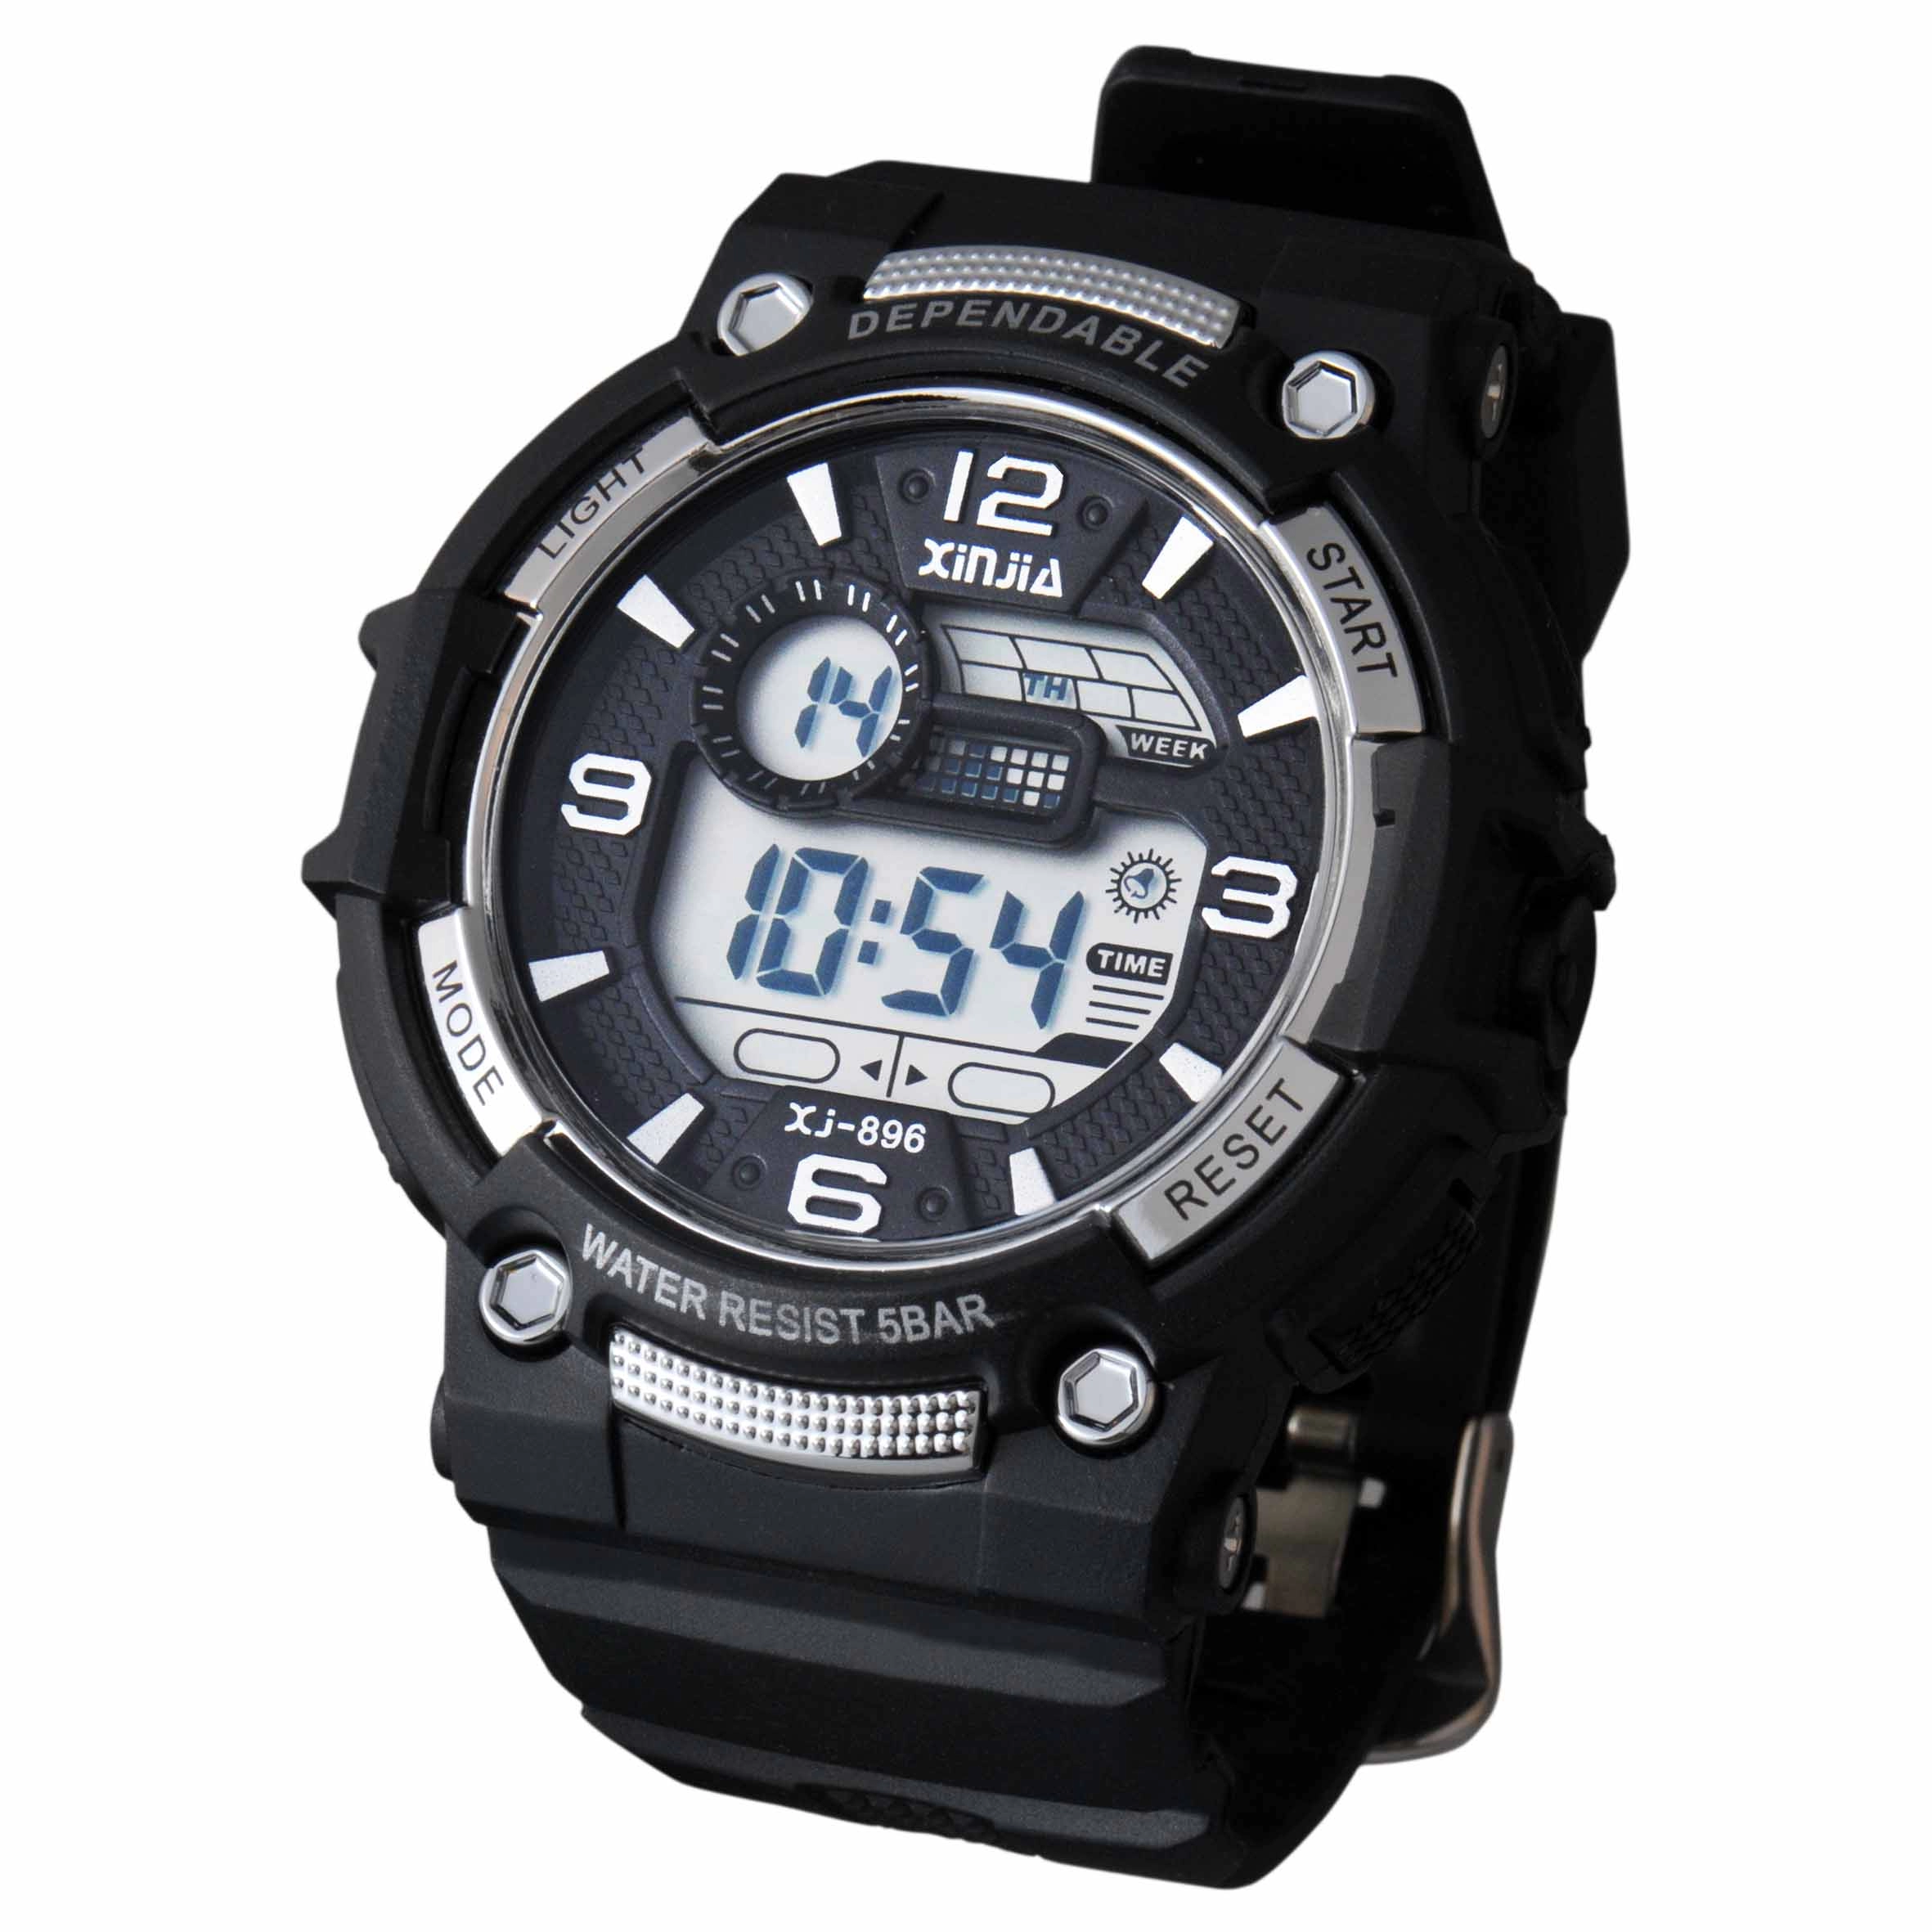 Energetic Series Sweet Water Resistant Digital Wrist Watch